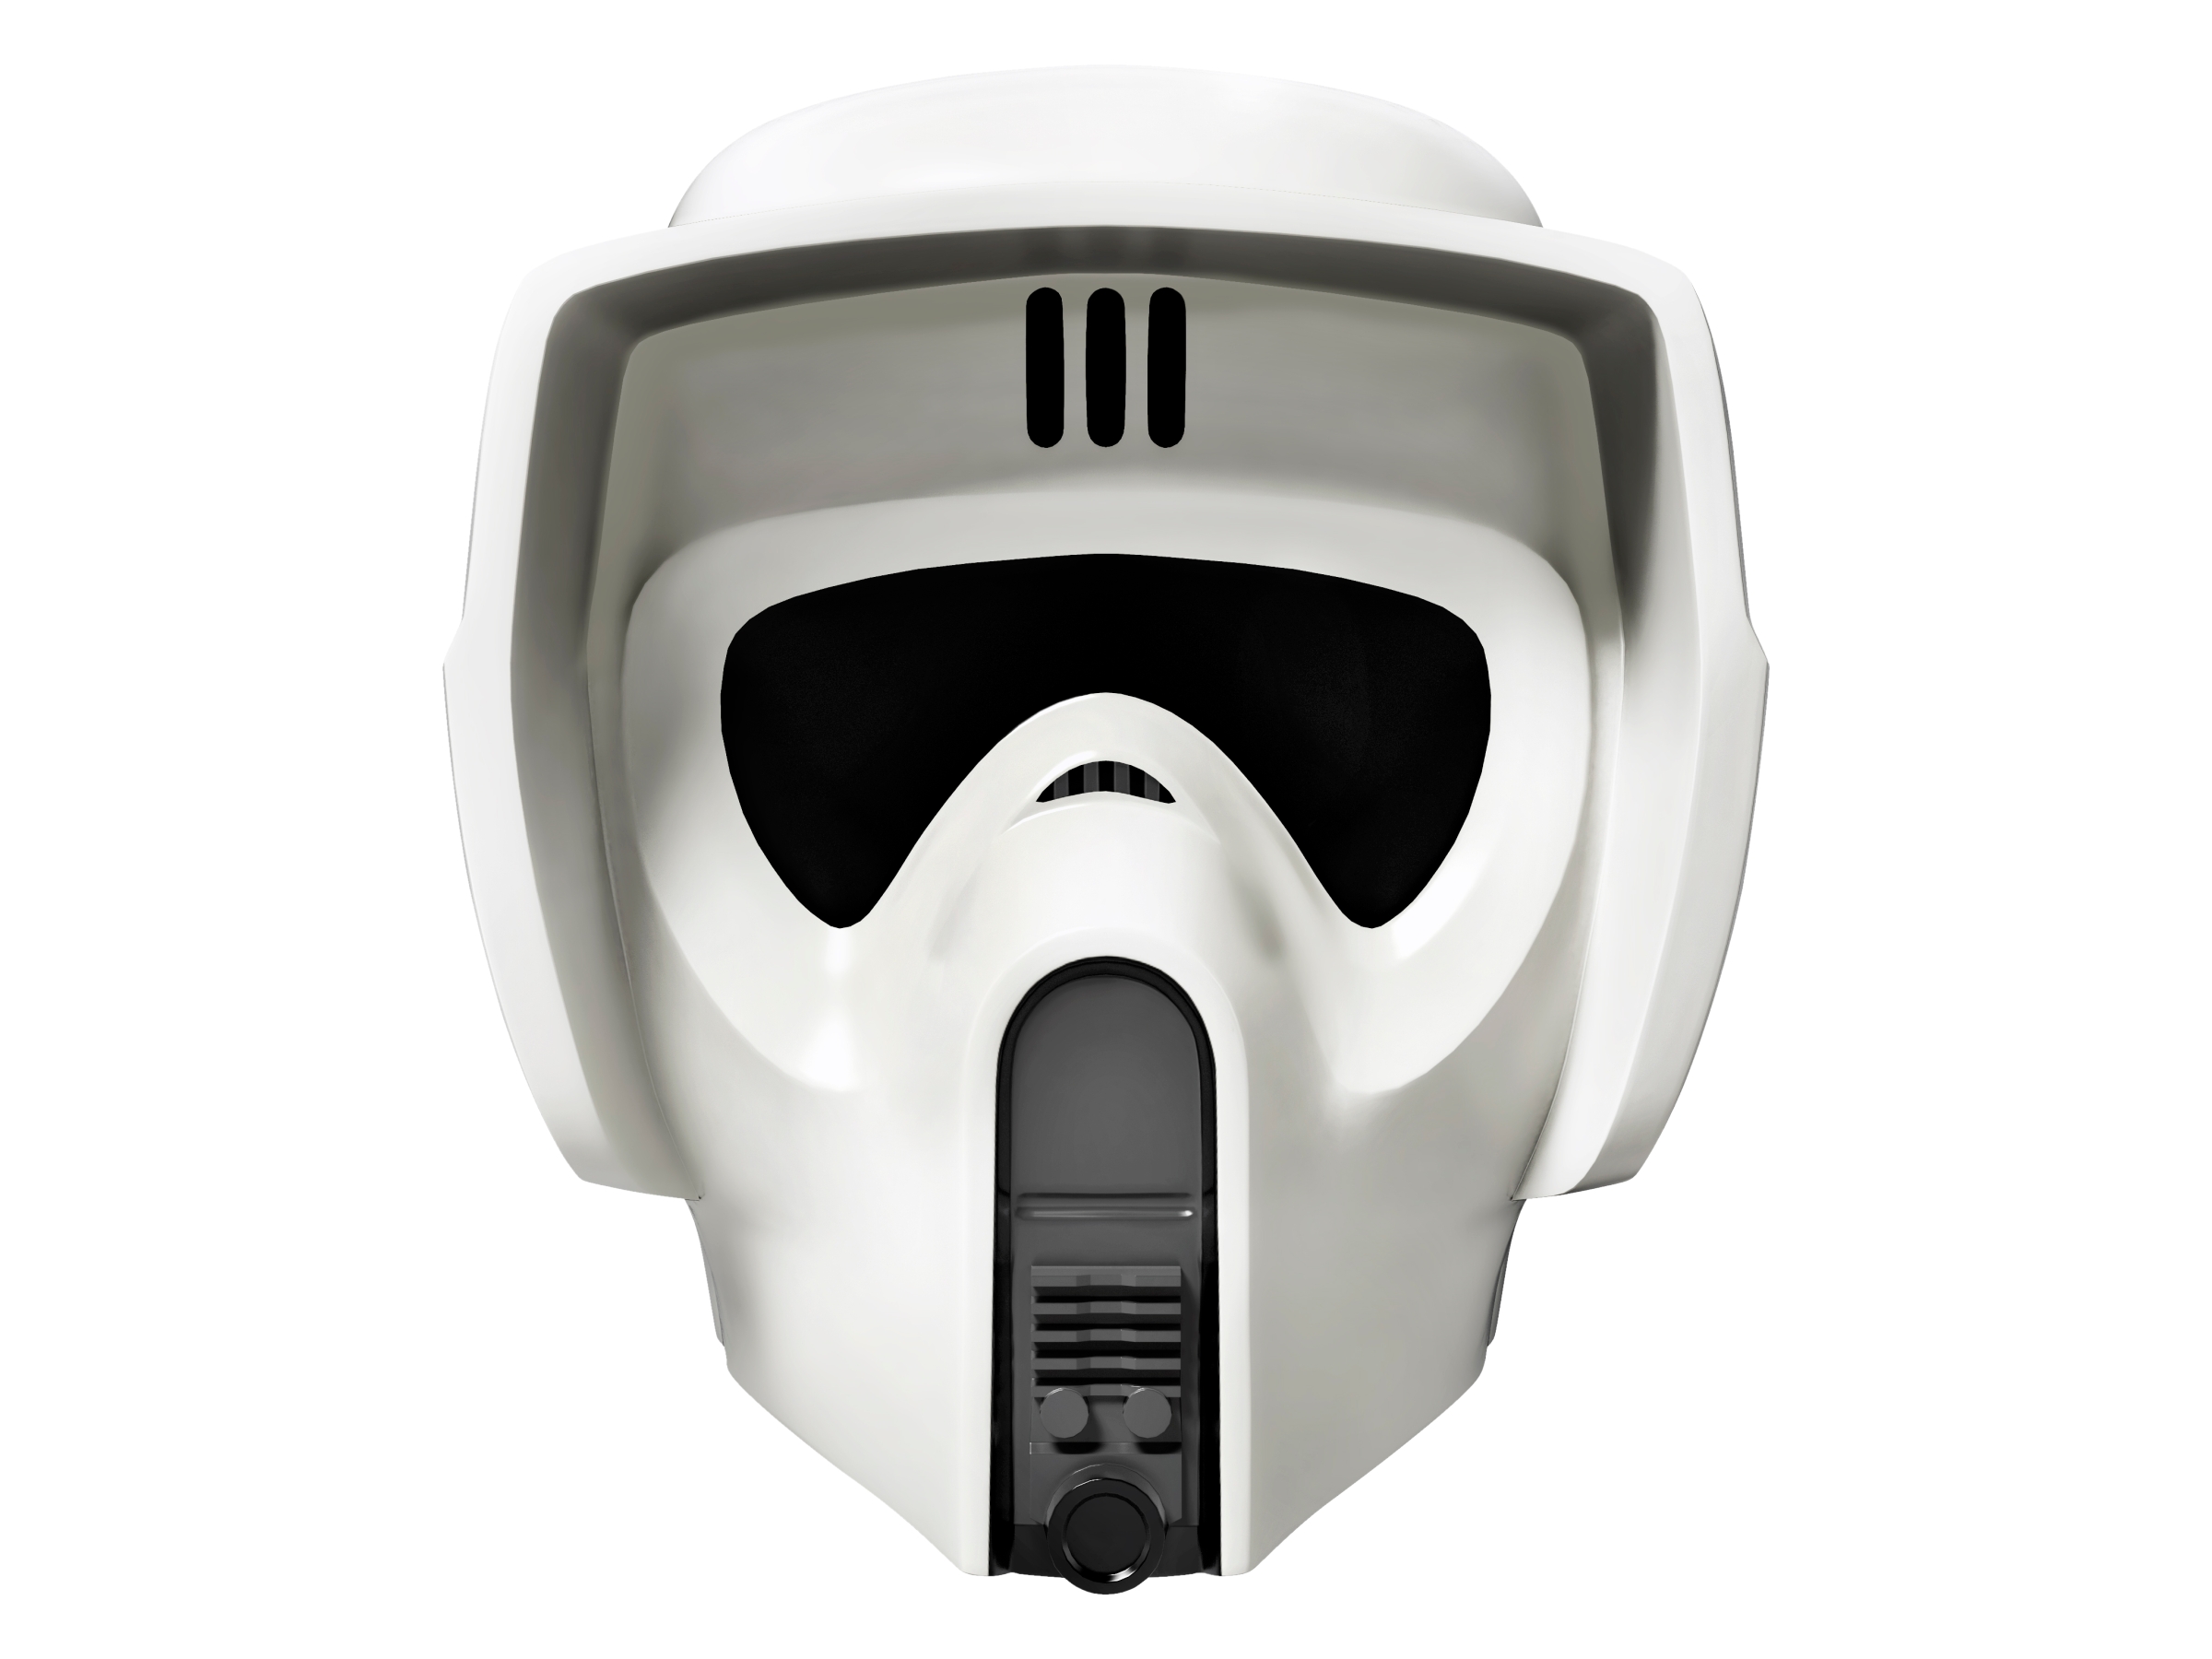 scout stormtrooper motorcycle helmet